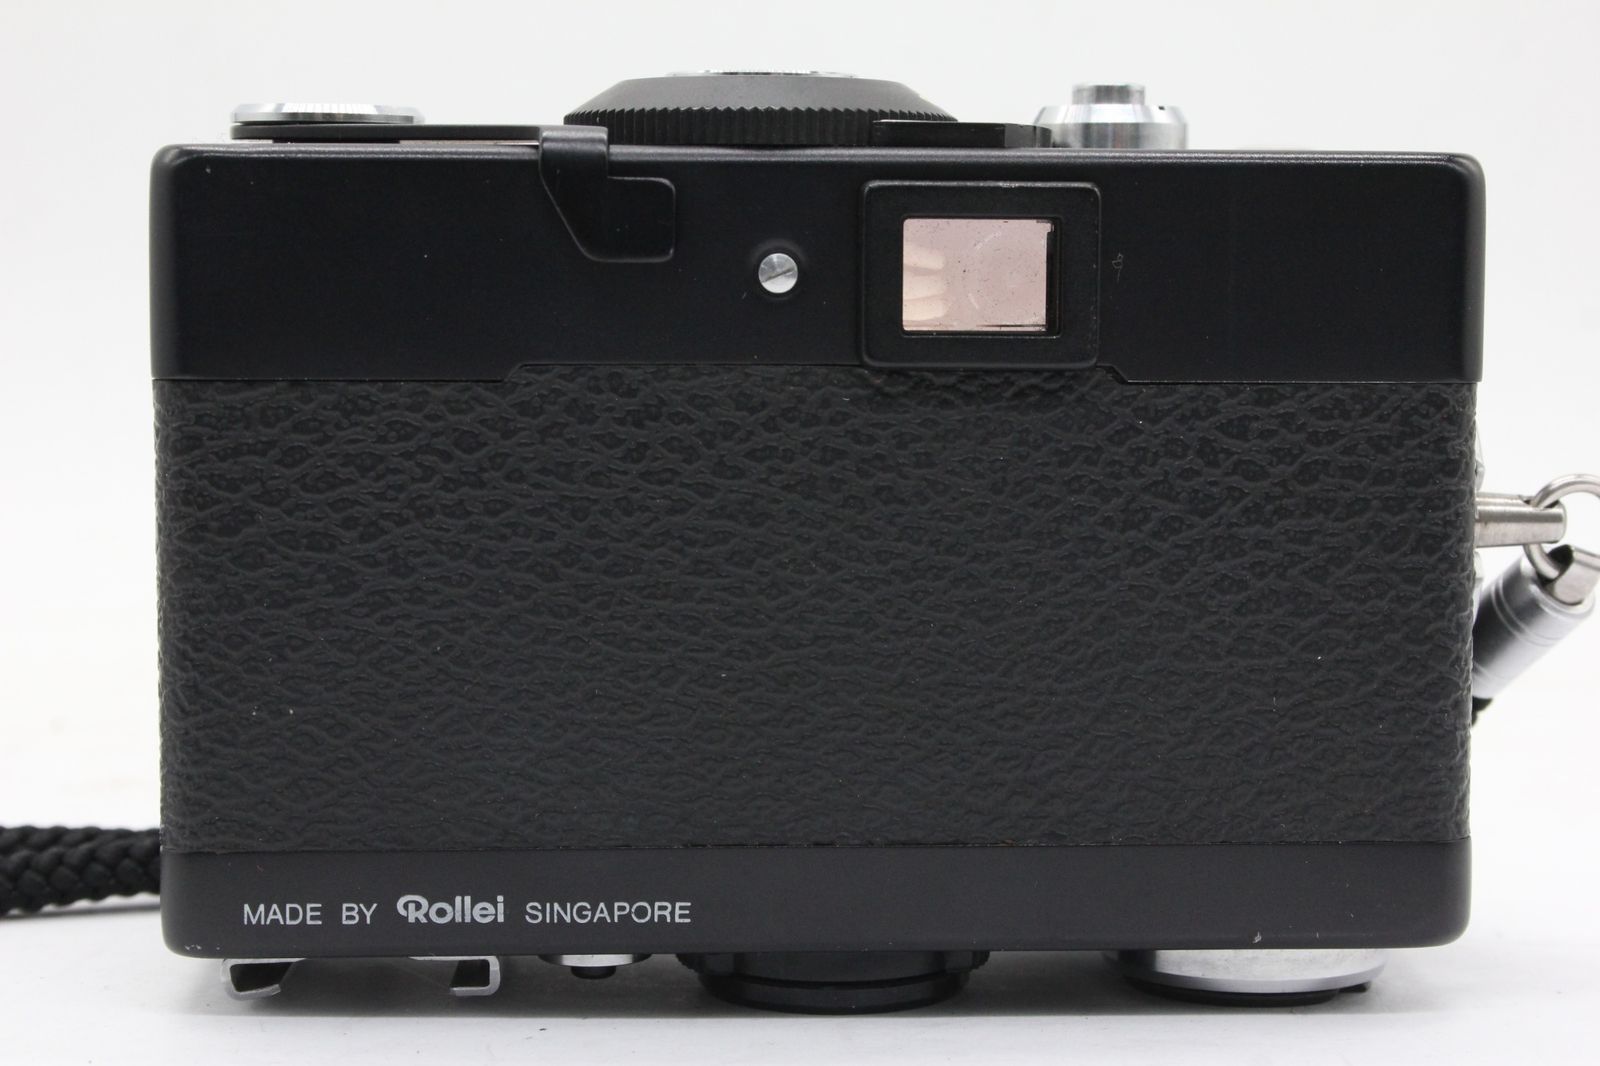 返品保証】 ローライ Rollei 35LED Triotar 40mm F3.5 コンパクトカメラ v2242 - メルカリ